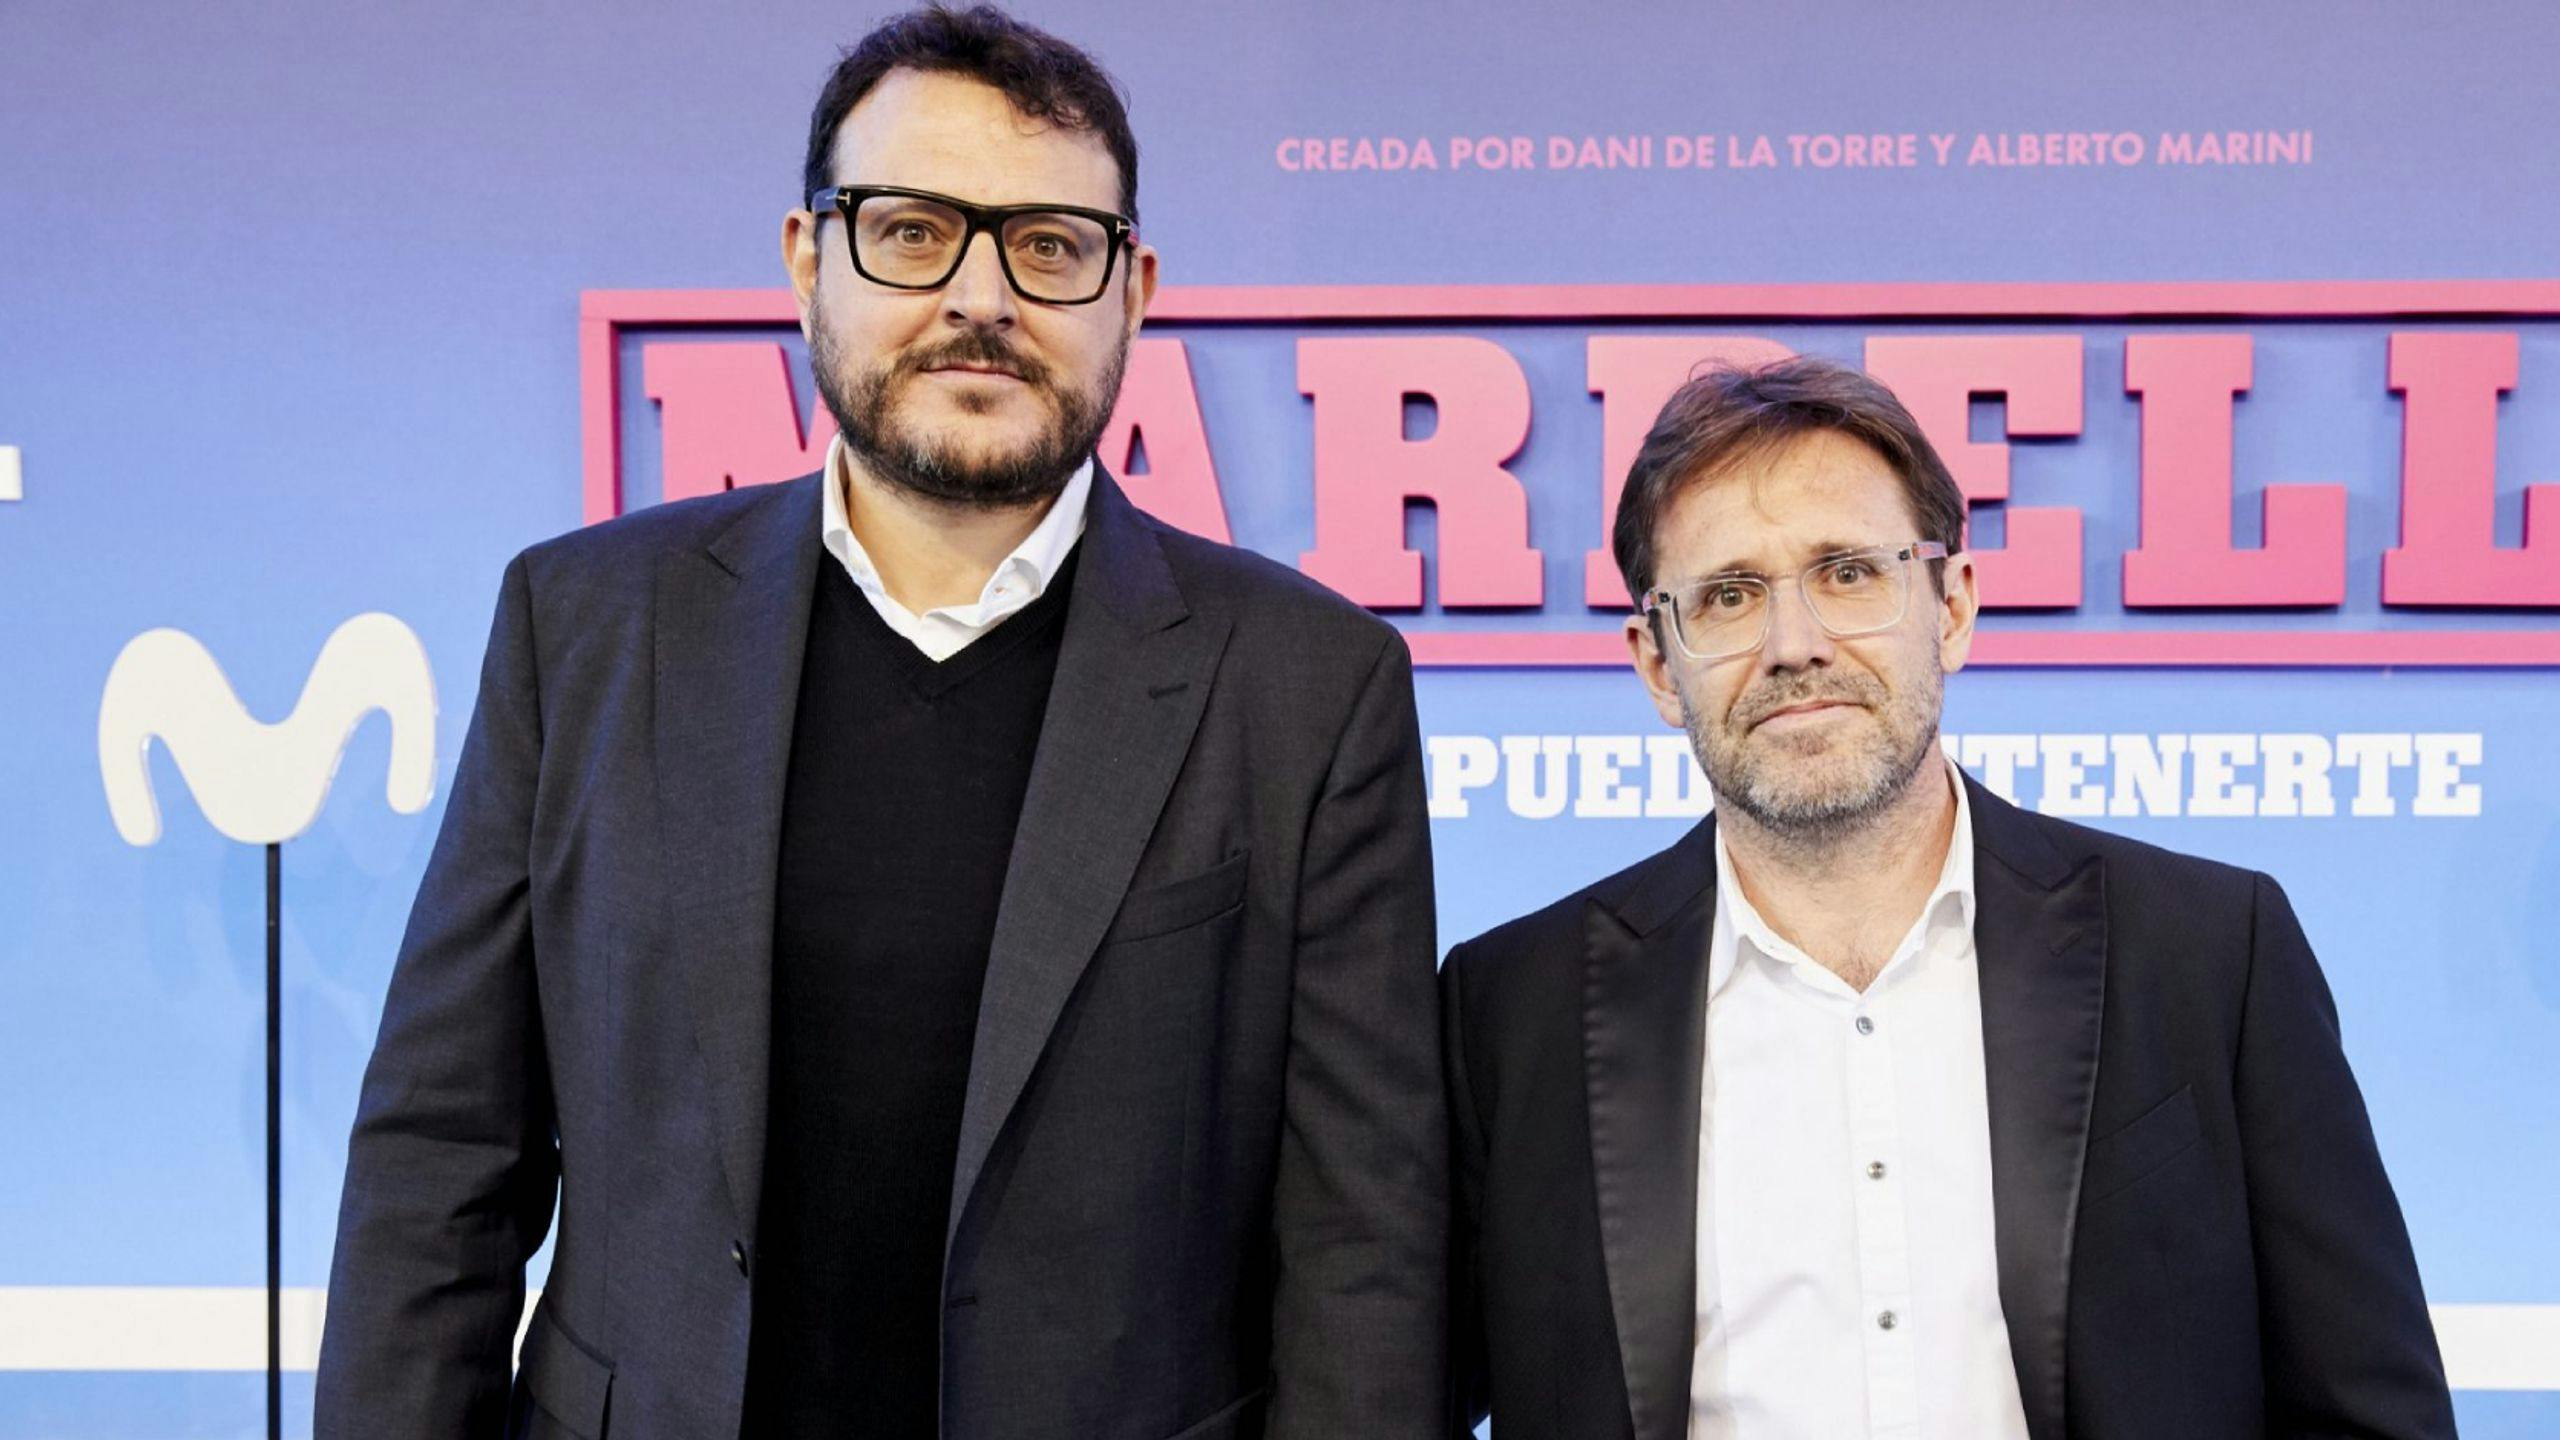 El director Dani de la Torre y el guionista Alberto Marini, creadores de 'Marbella', durante el estreno de la serie